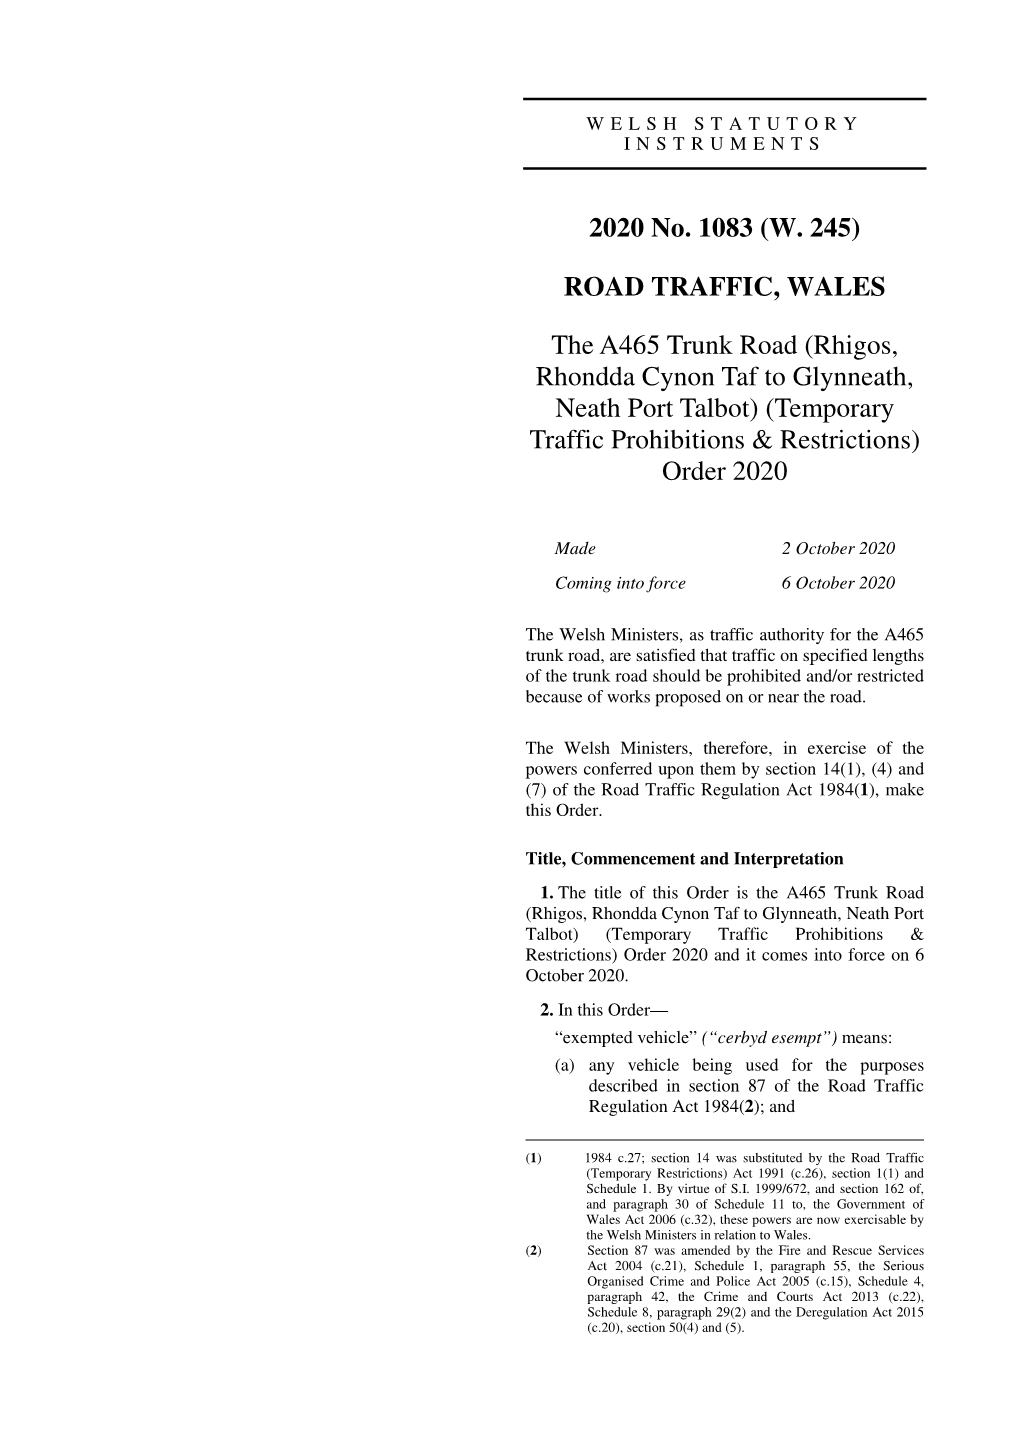 The A465 Trunk Road (Rhigos, Rhondda Cynon Taf to Glynneath, Neath Port Talbot) (Temporary Traffic Prohibitions & Restrictions) Order 2020